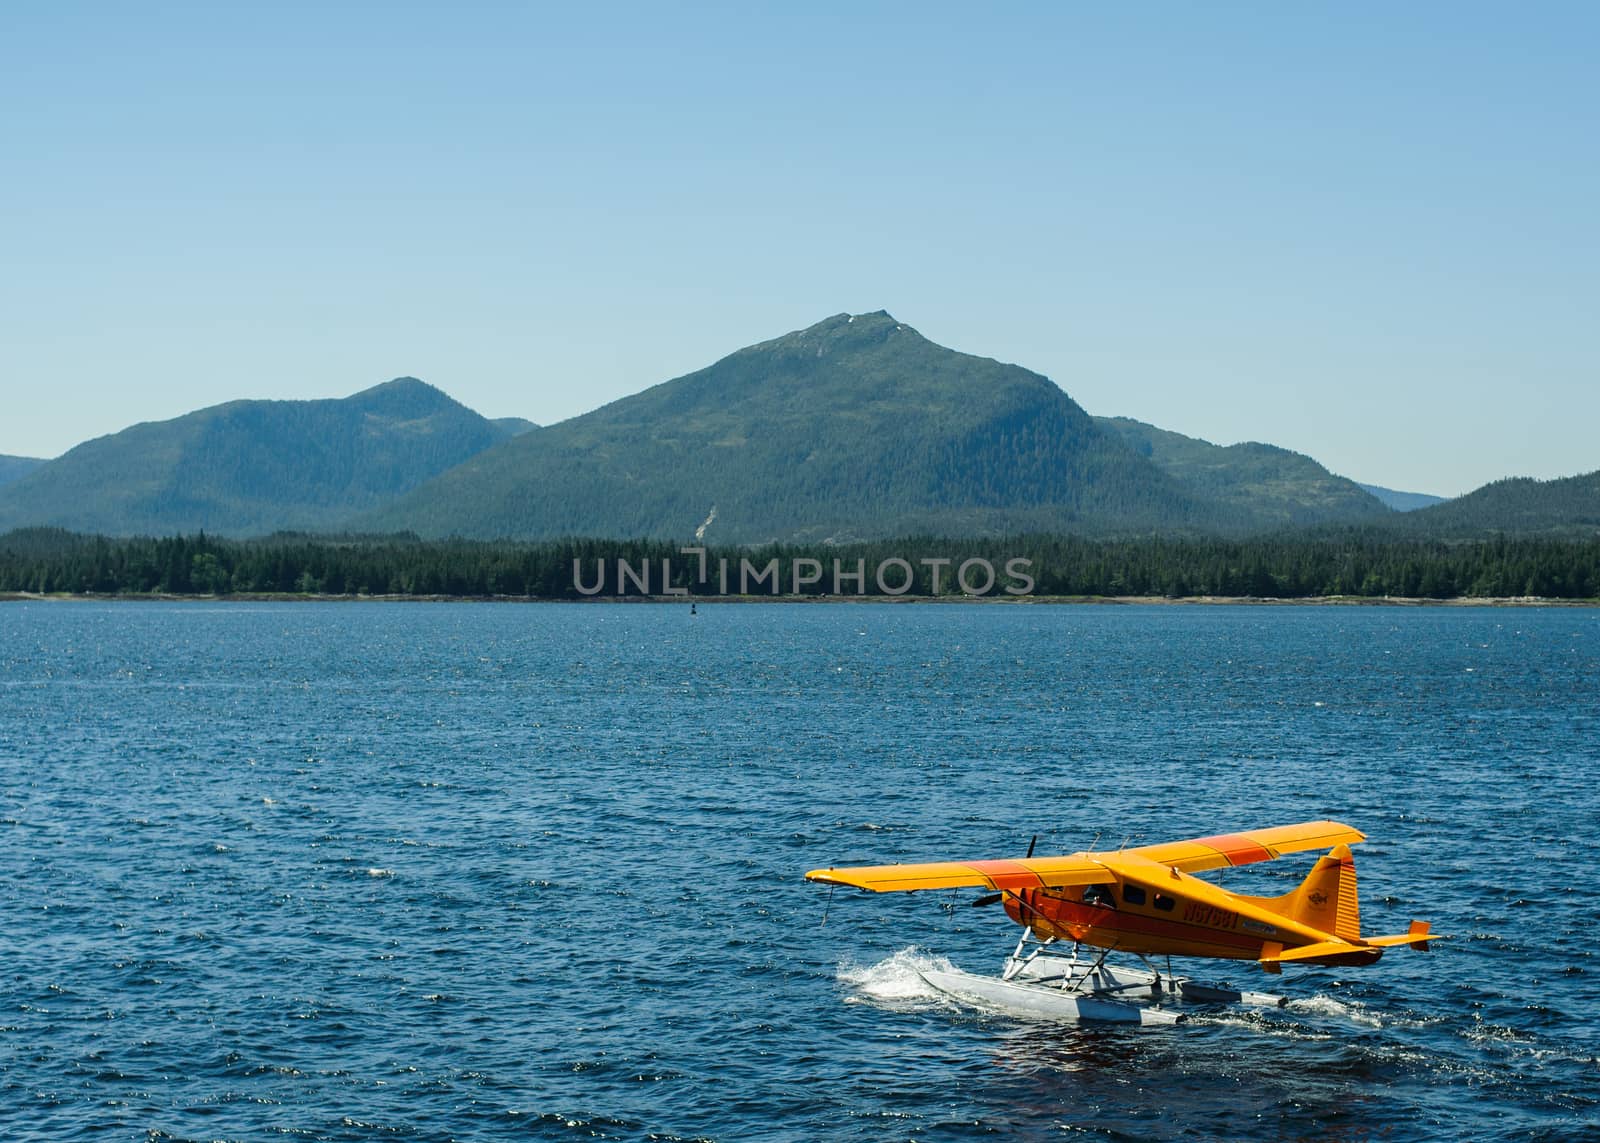 Water plane in Alaska